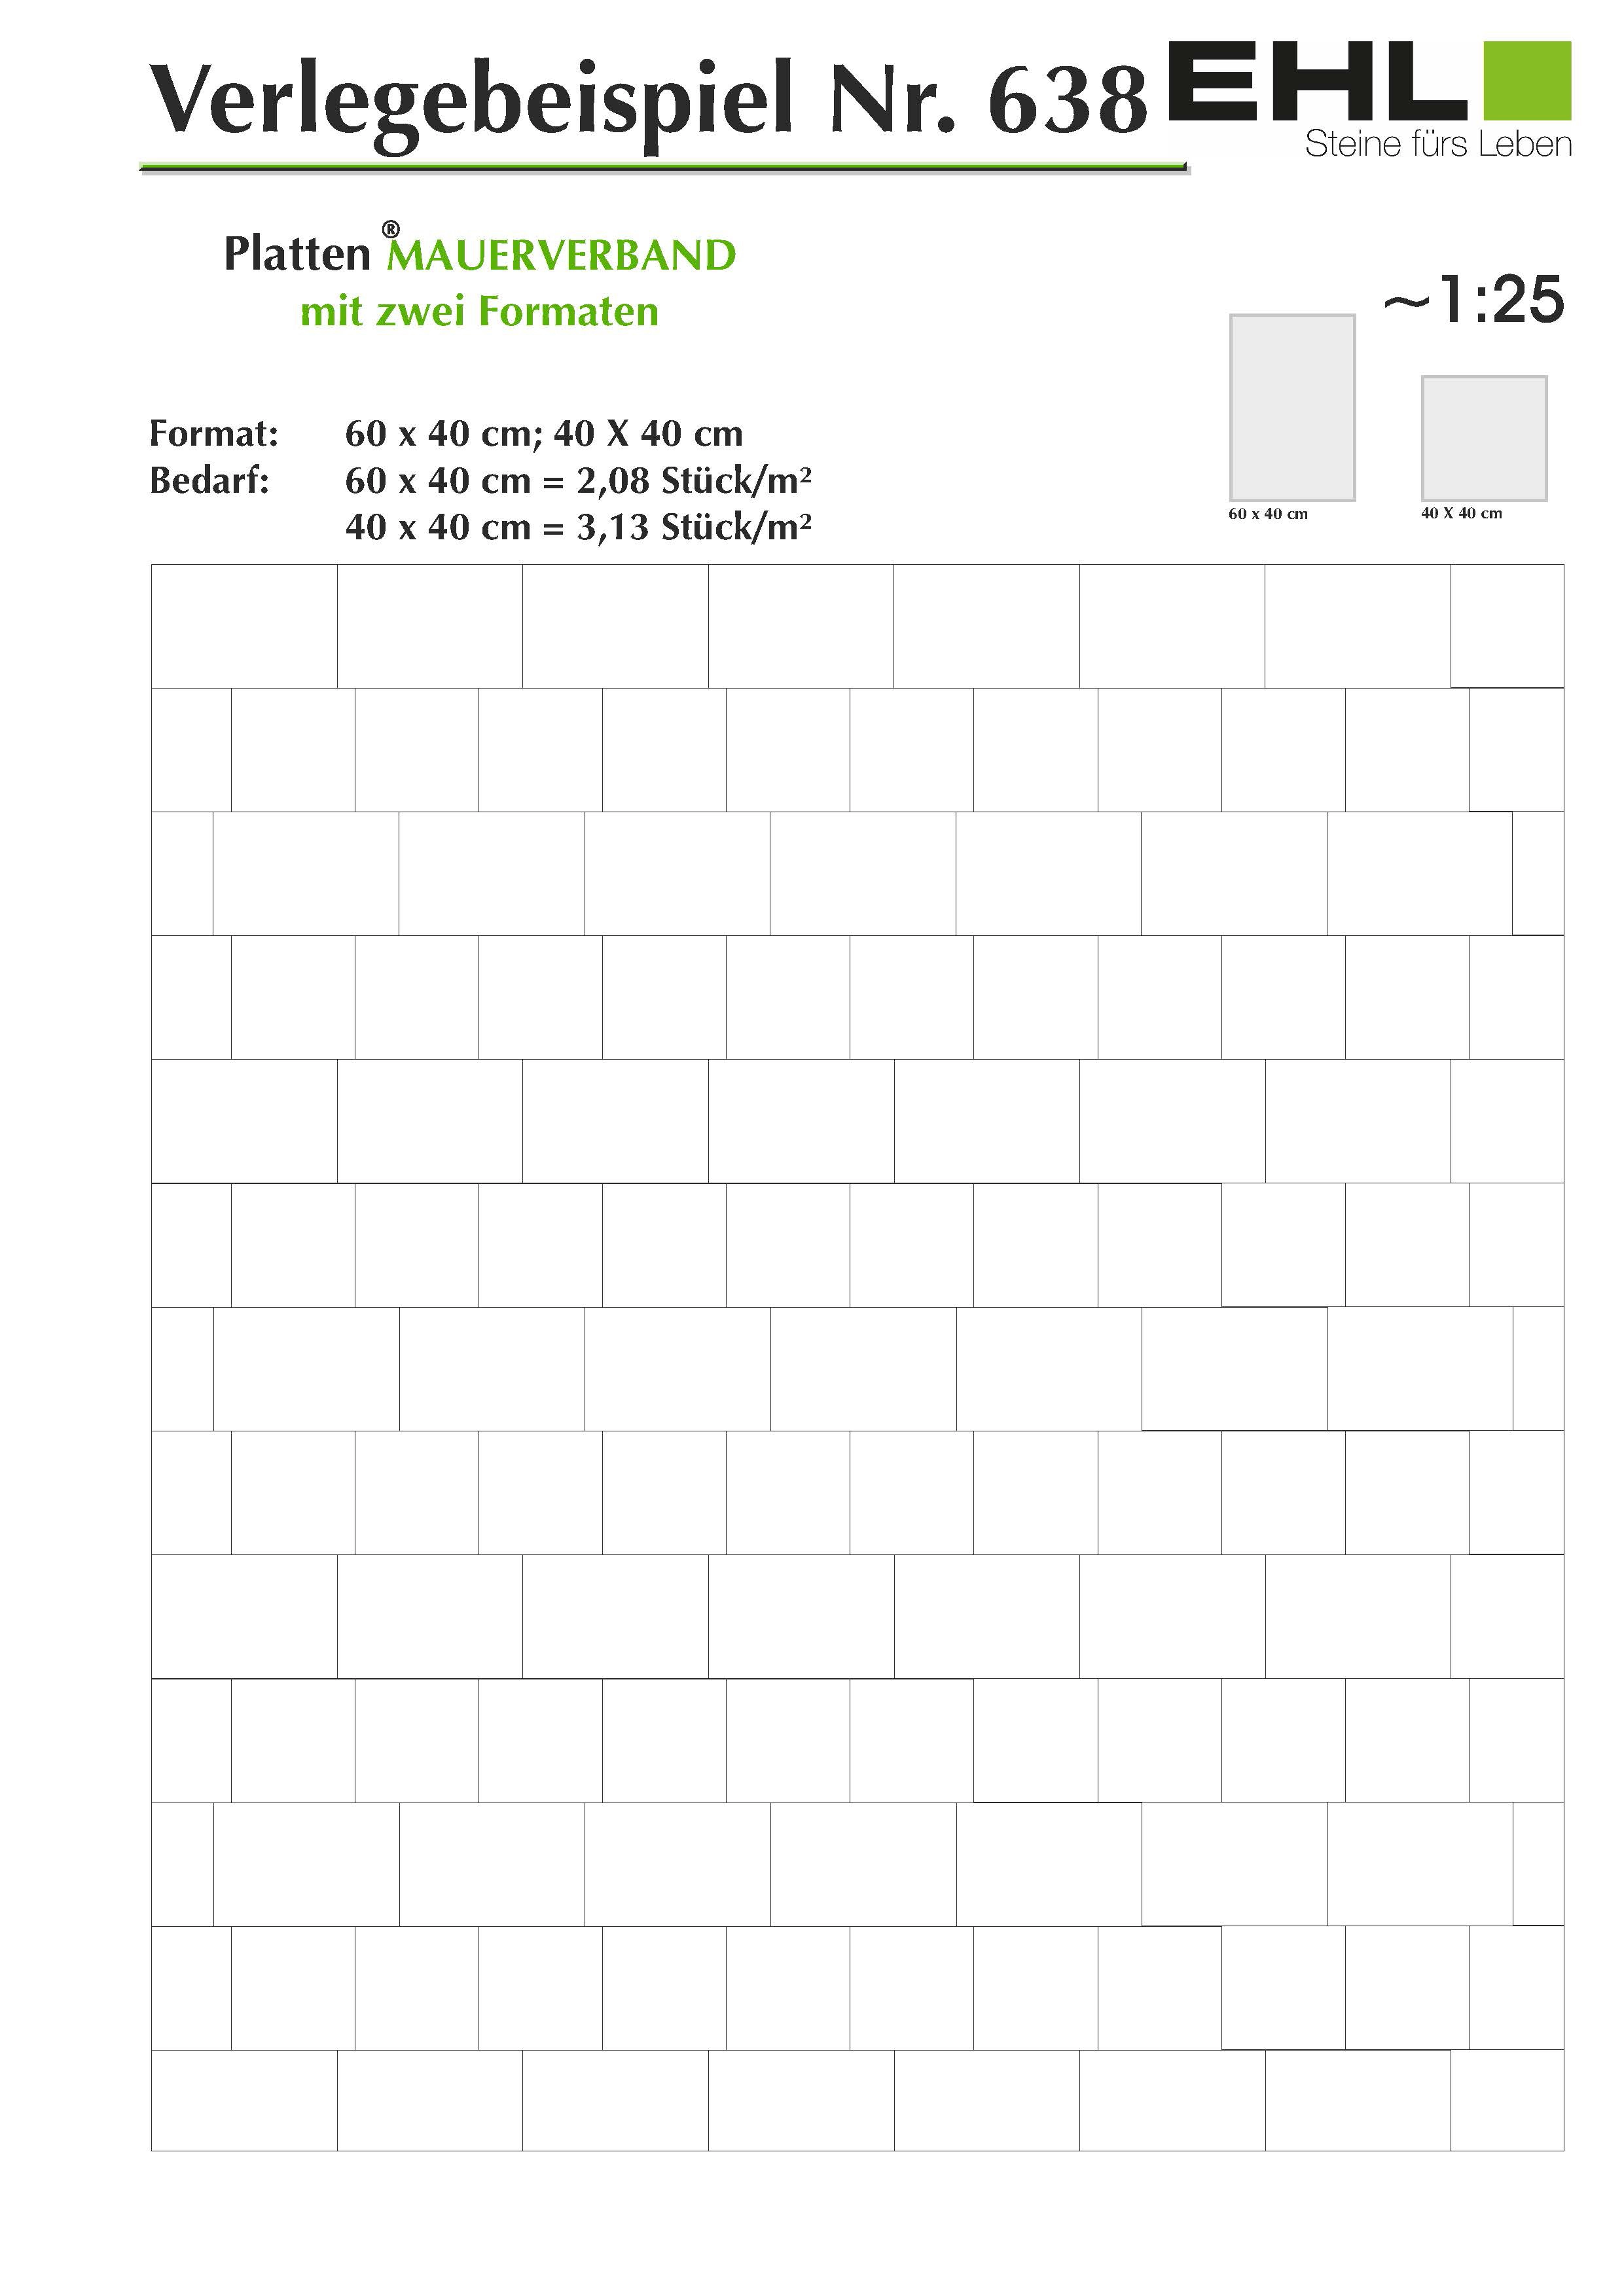 Terrassenplatte Beton Mesafino Grau beschichtet 40 cm x 40 cm x 4